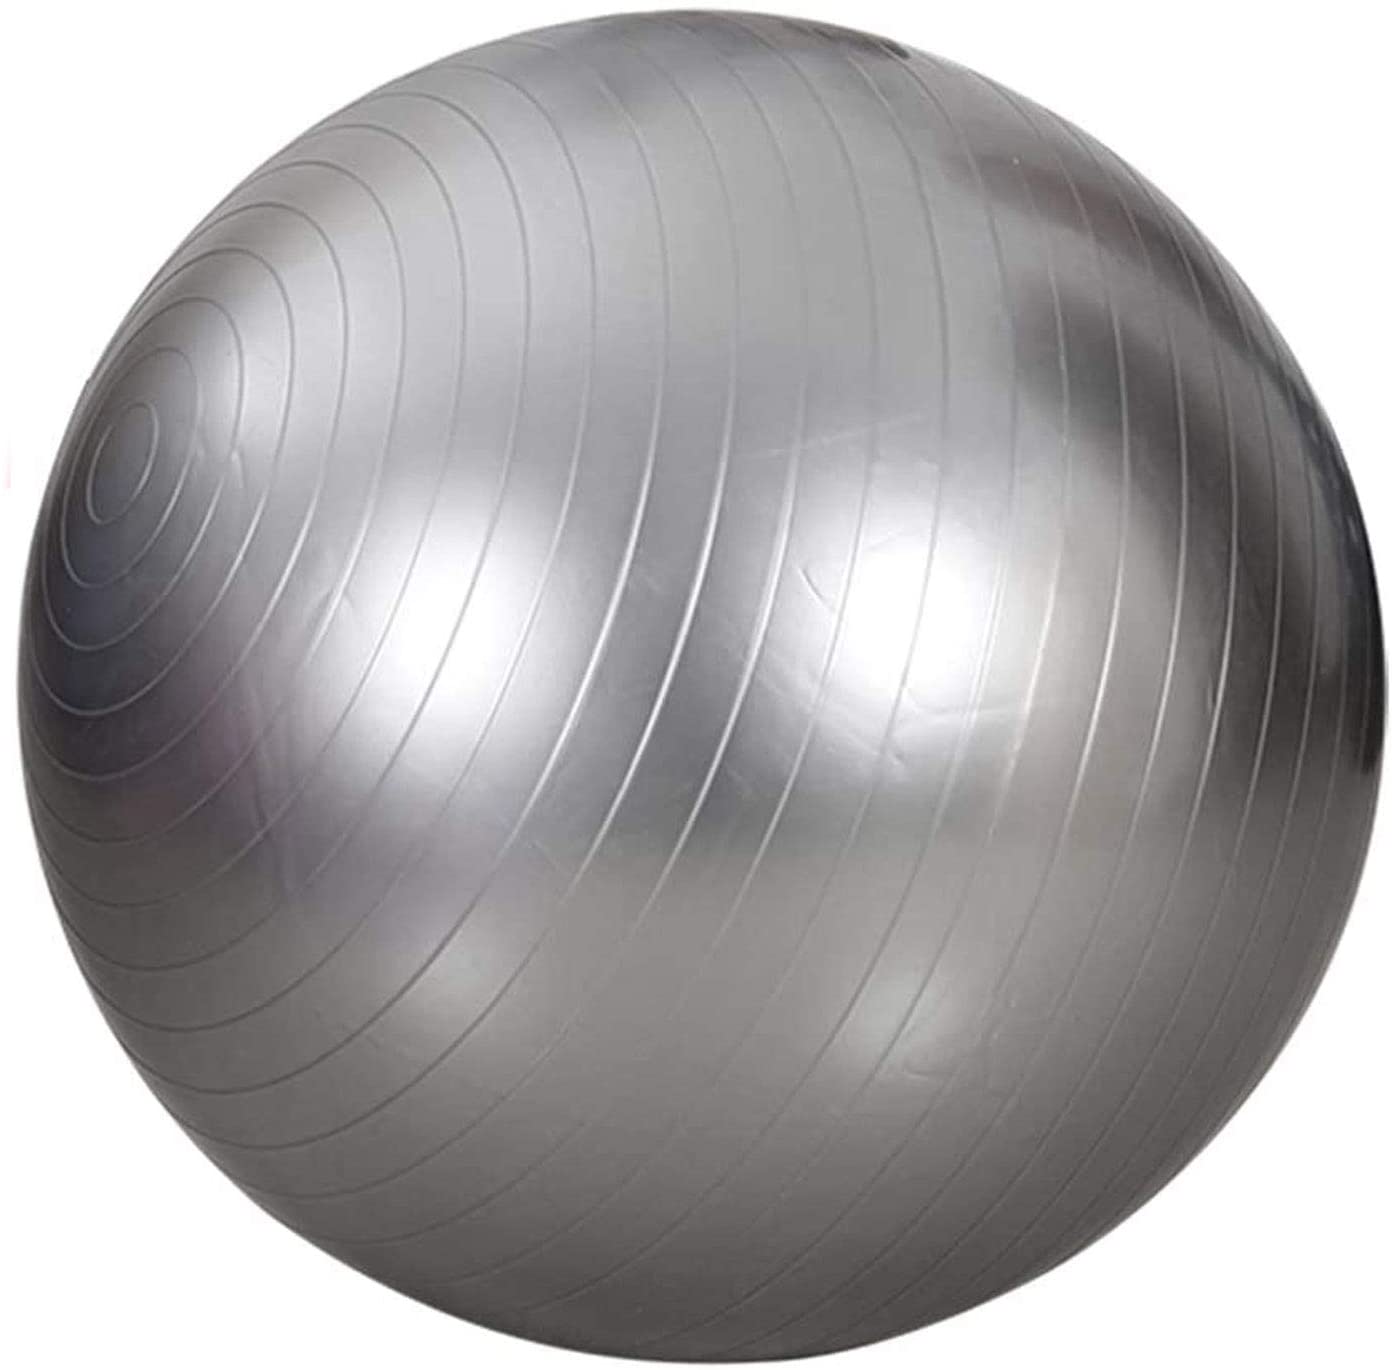 Bóng tập Yoga trơn cao cấp 65cm - Bóng Yoga tròn chống nổ - Hàng chính hãng D Danido